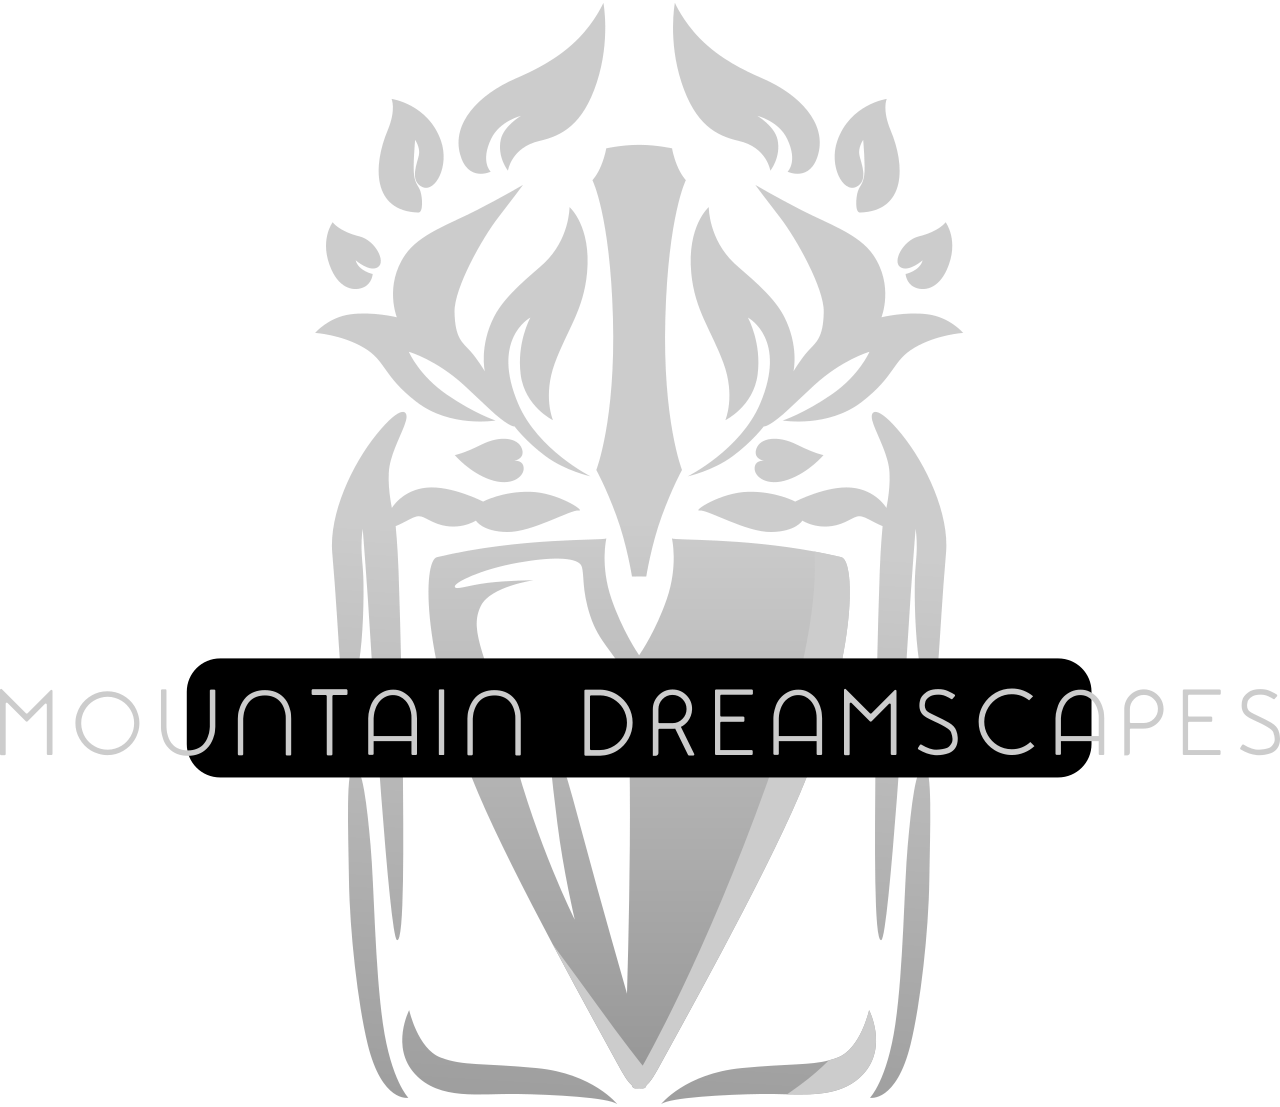 Mountain Dreamscapes's logo